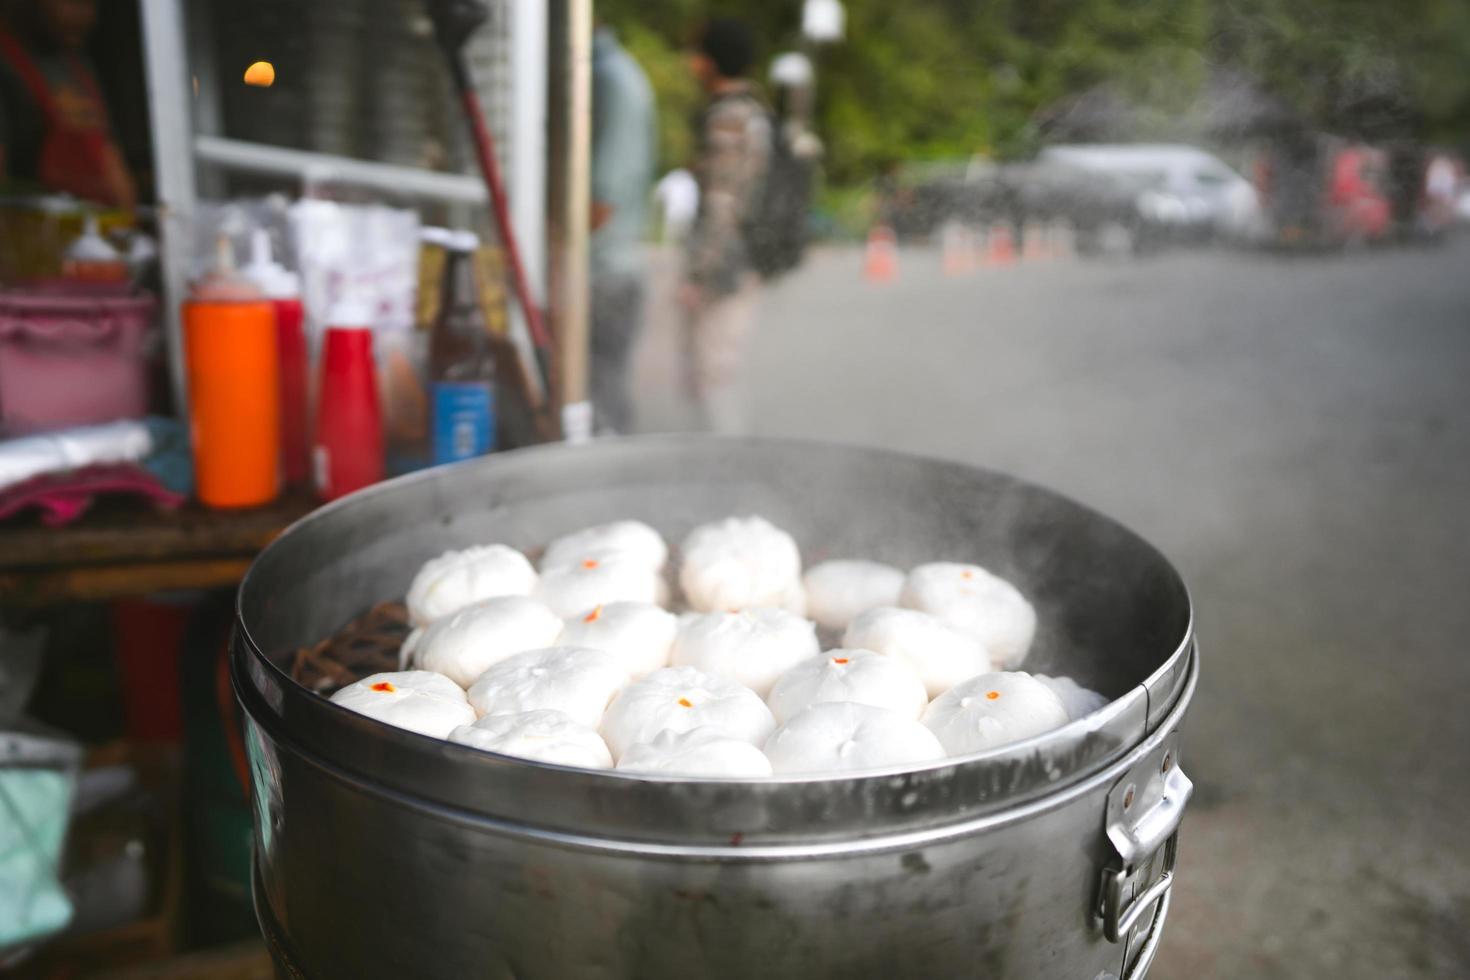 comida callejera de bollo de cerdo al estilo local chino humeante. foto